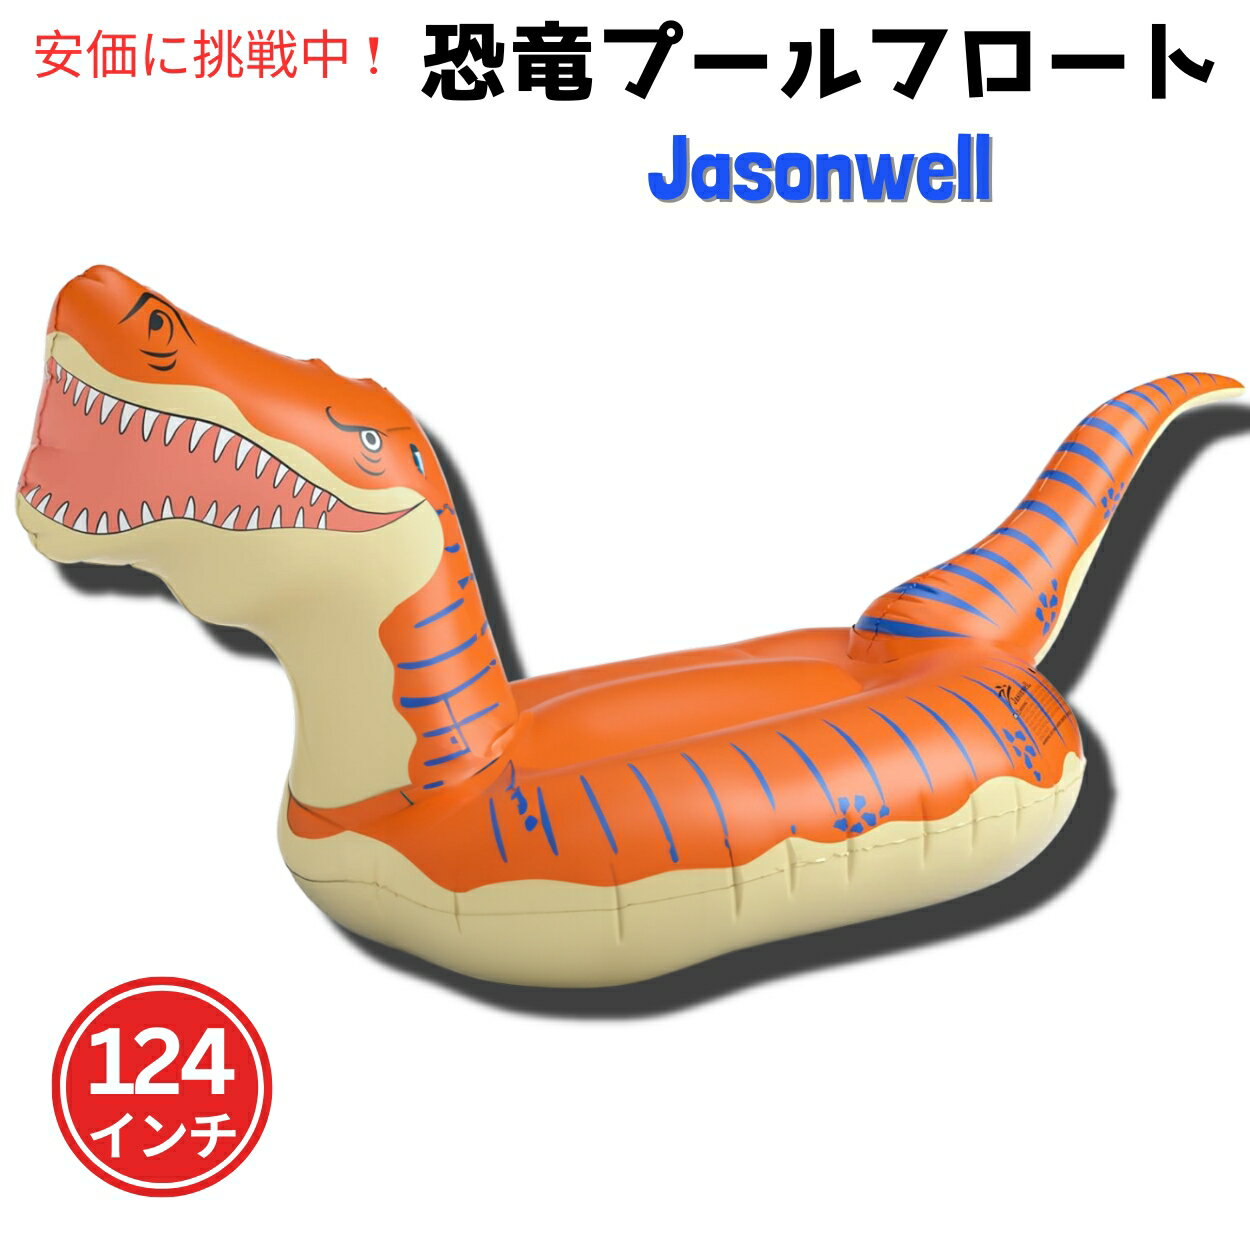 ジェーソンウェル ジャンボ ティラノサウルス ライドオンフロート [オレンジ] 124インチ Jasonwell 恐竜 浮き具　プール　海　水遊び